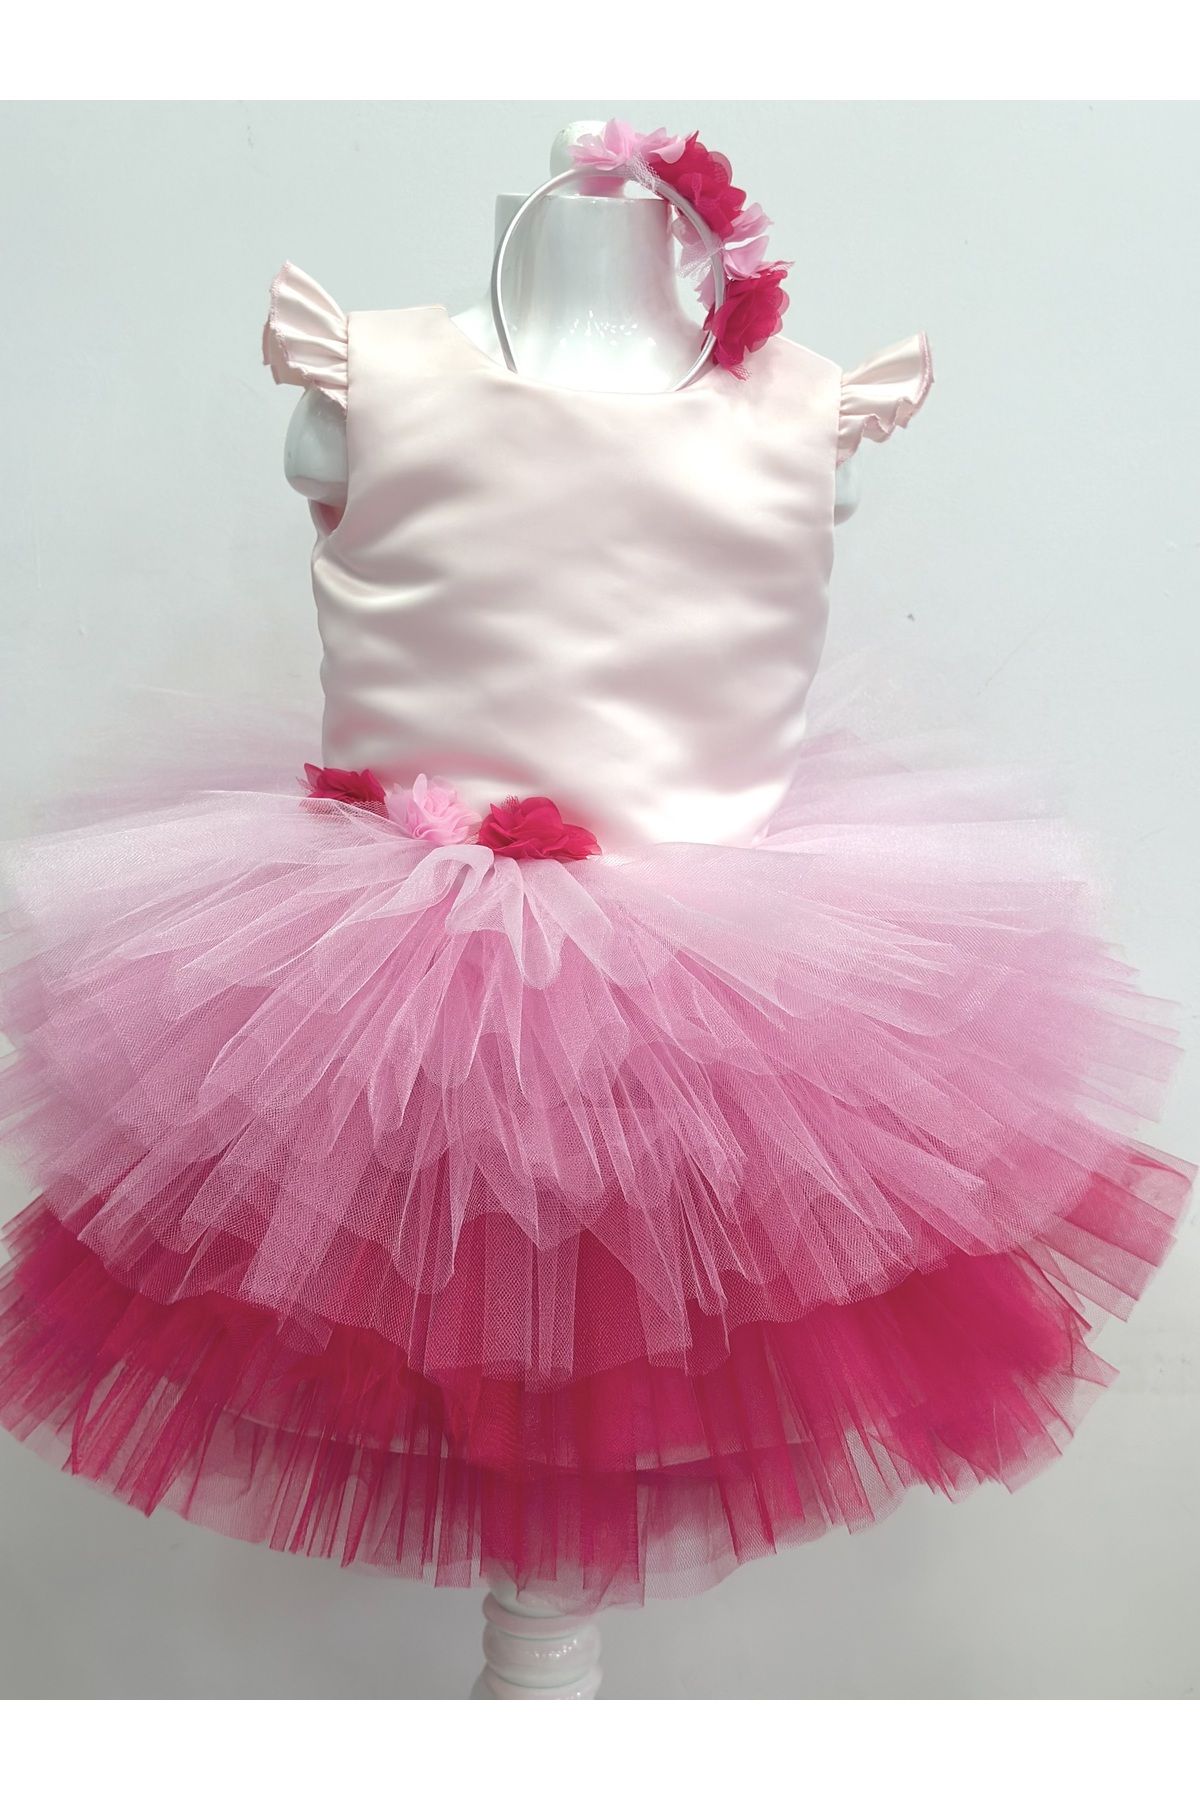 YAĞMUR KOStütüM Barbie Kız Çocuk Pembe Doğumgünü Elbisesi & Parti Kostümü